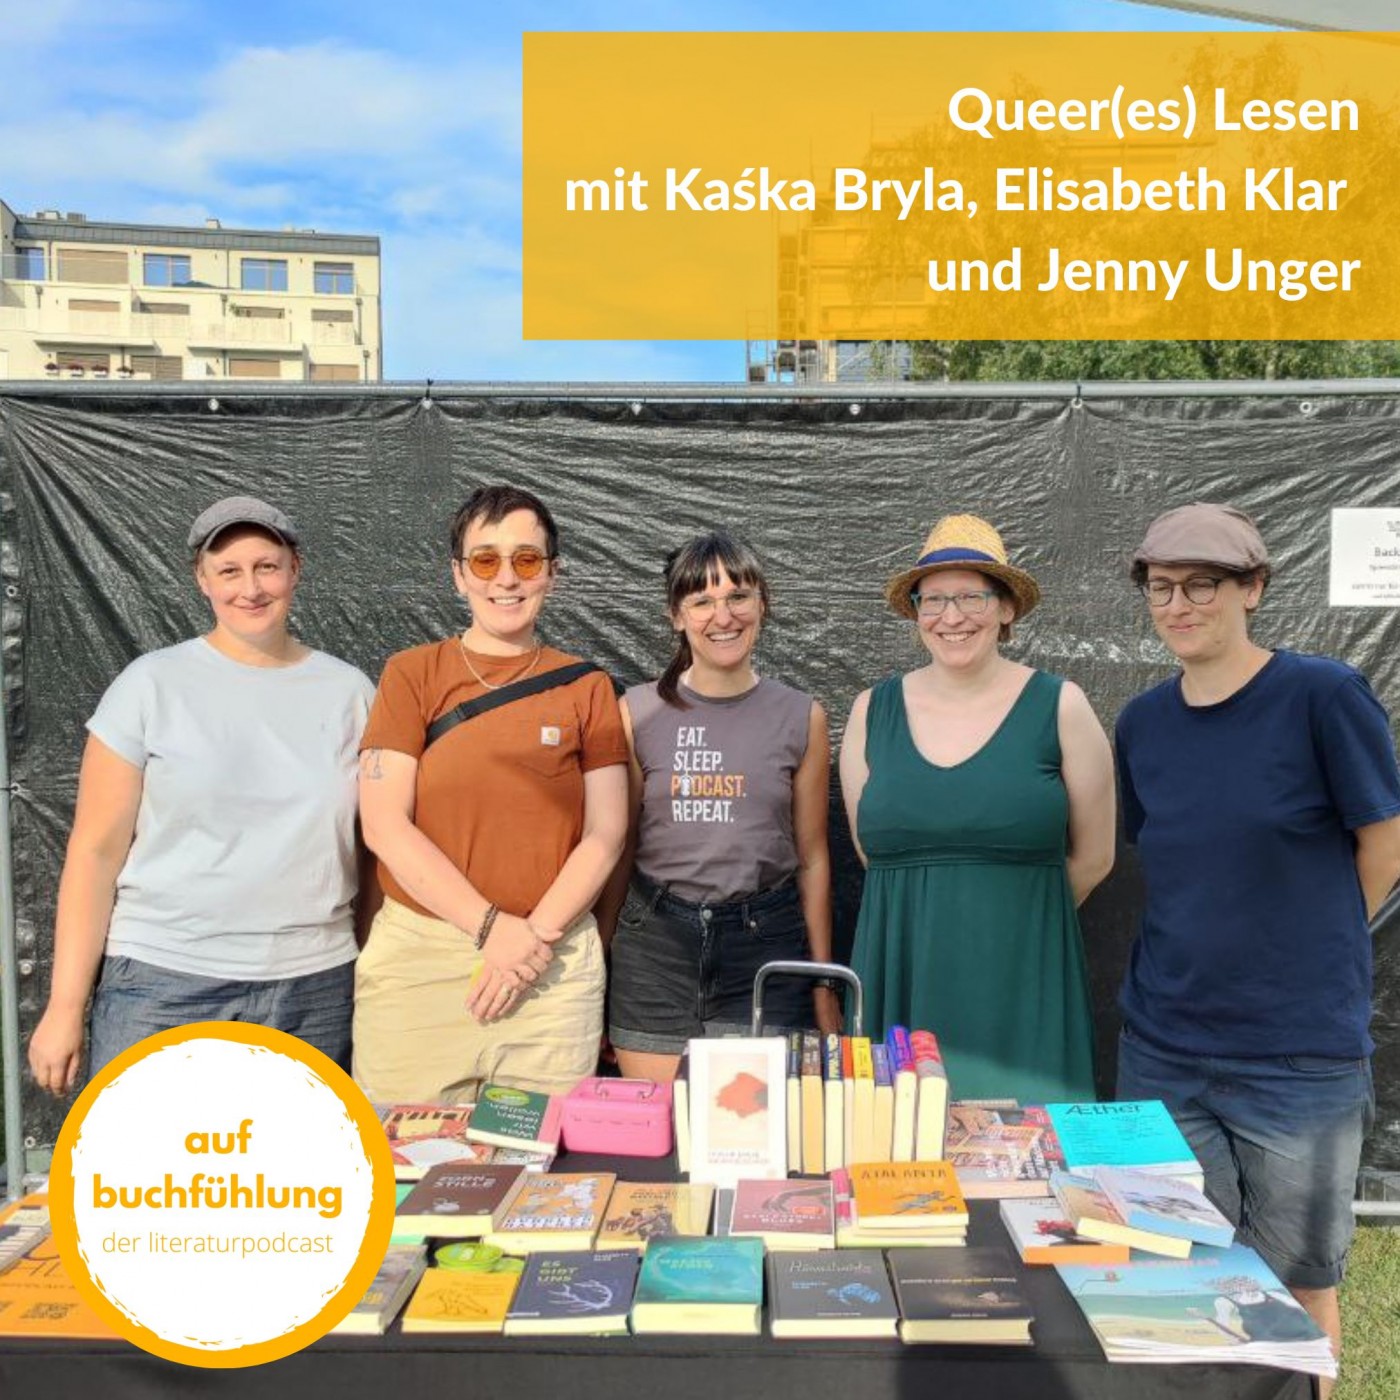 Queer(es) Lesen in Wien: Kaśka Bryla, Elisabeth Klar und Jenny Unger